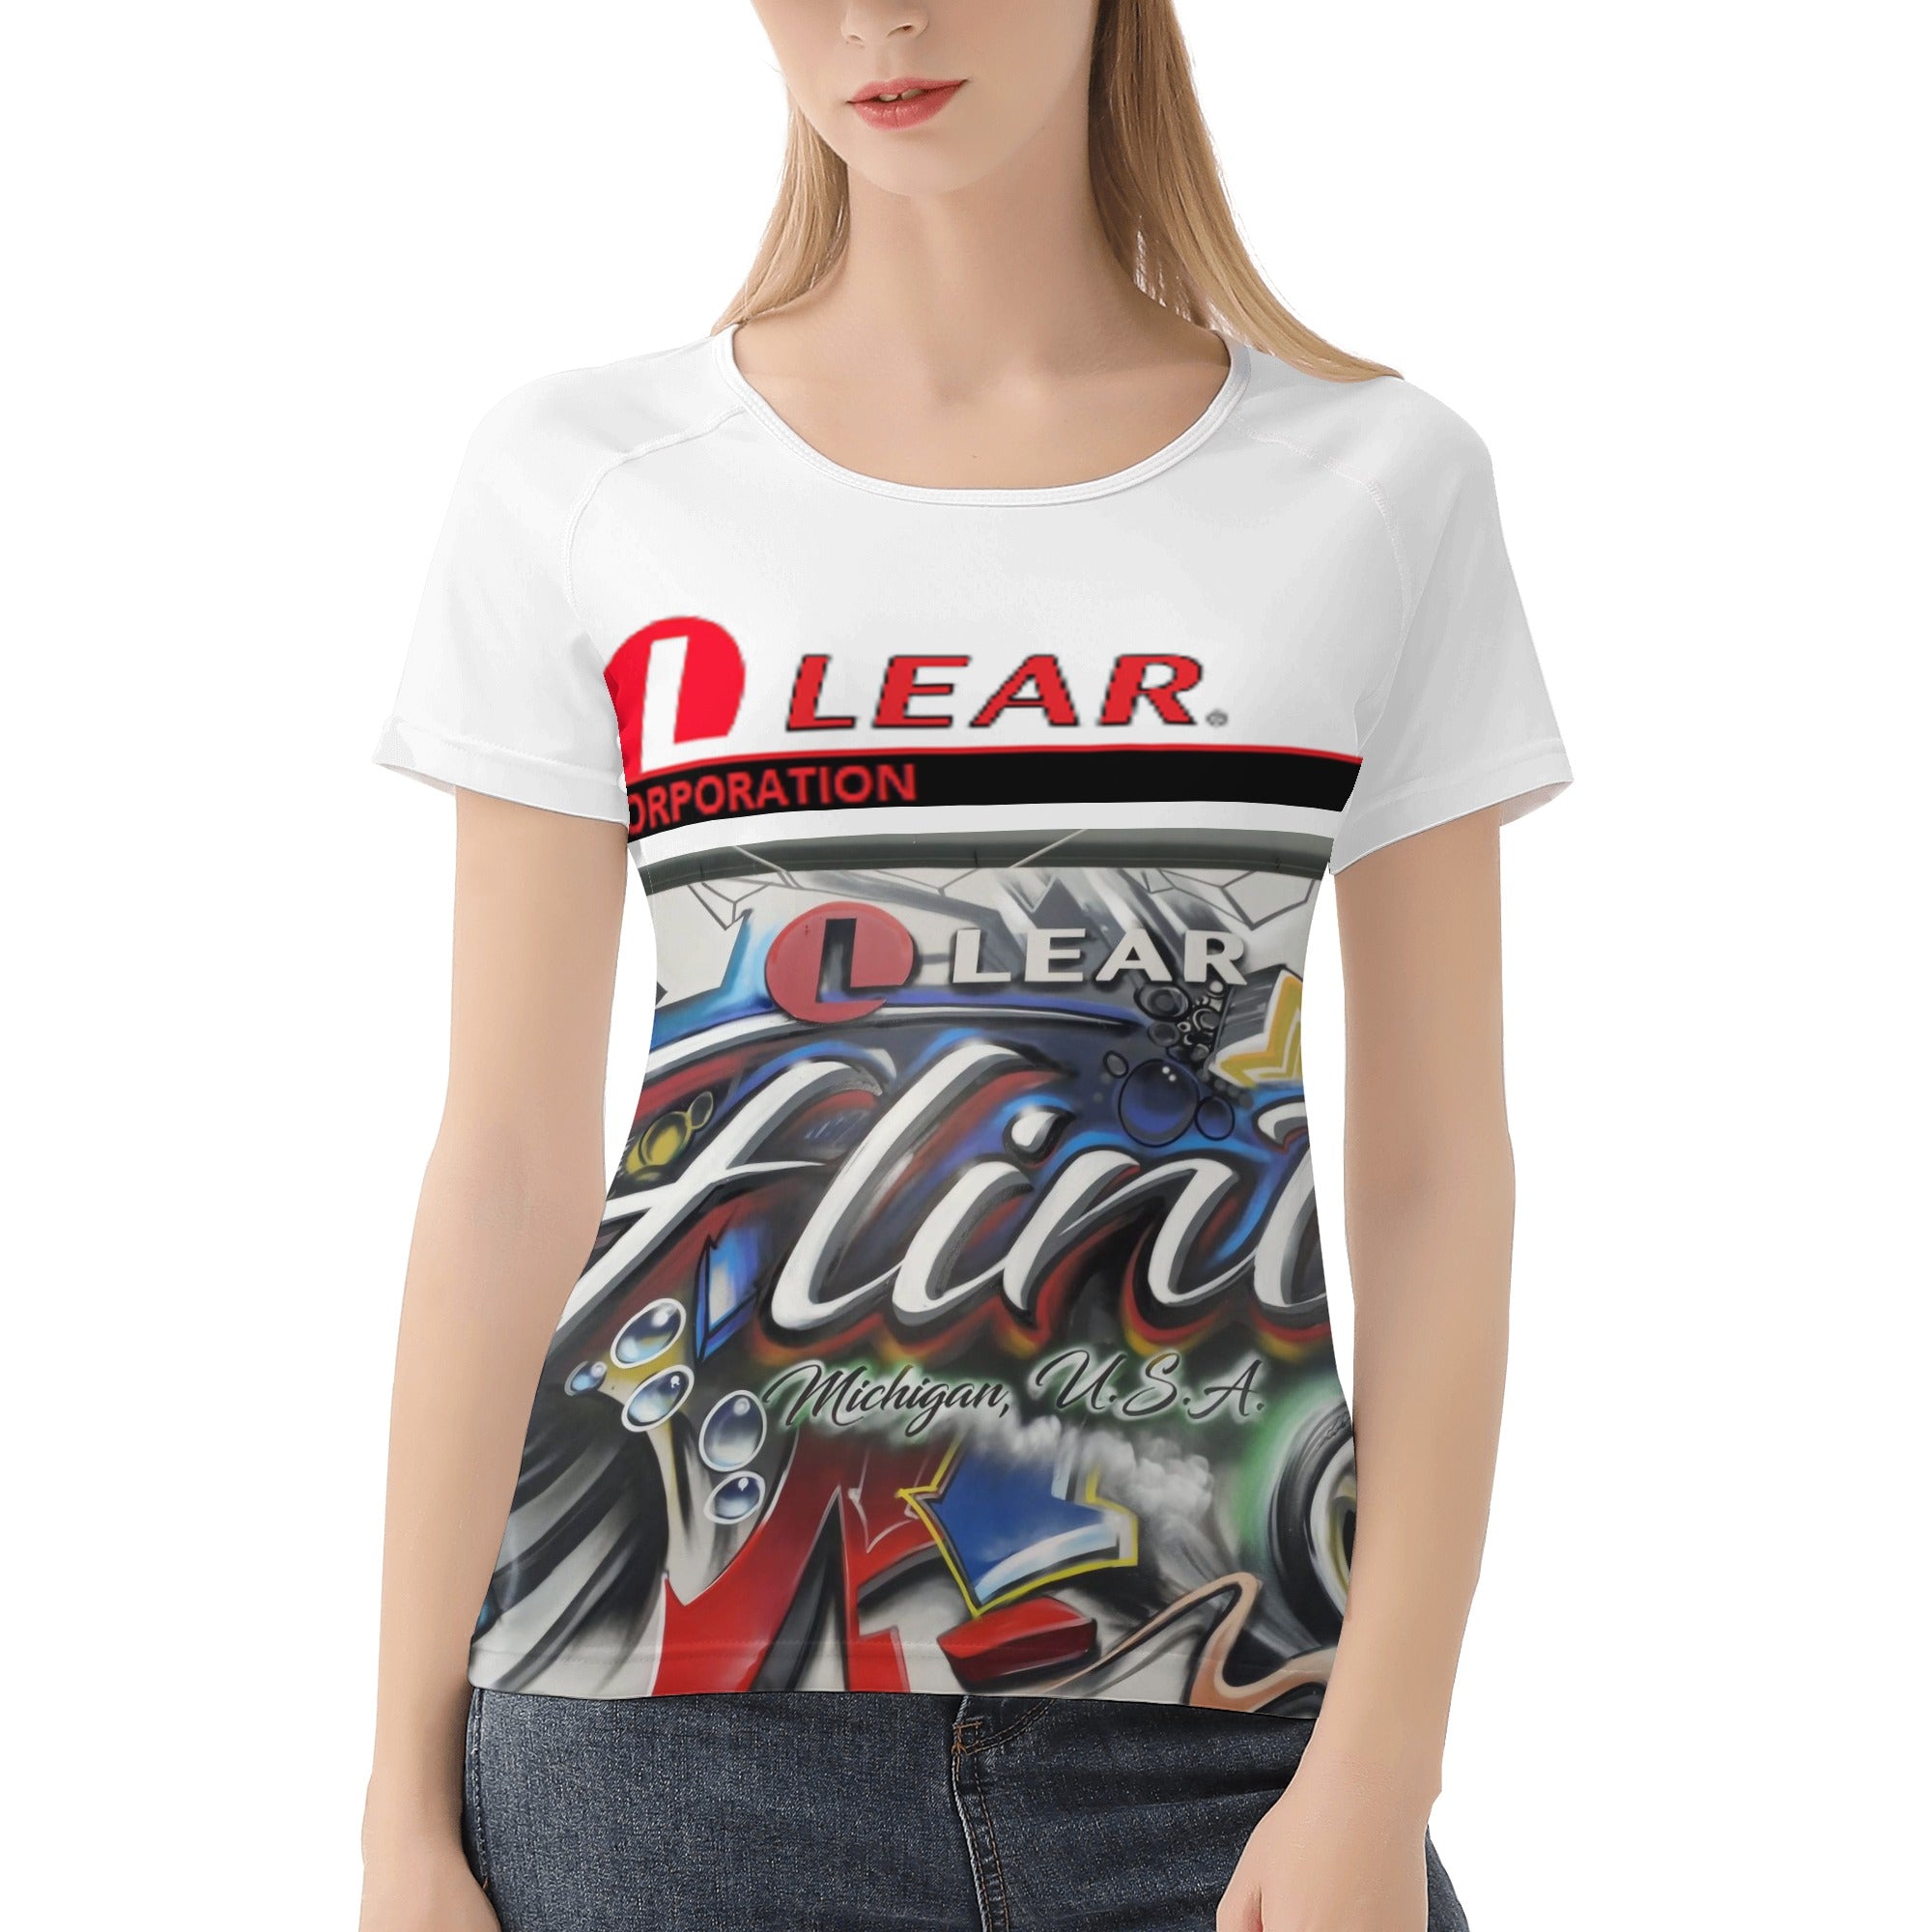 Women's All-Over Print T shirt